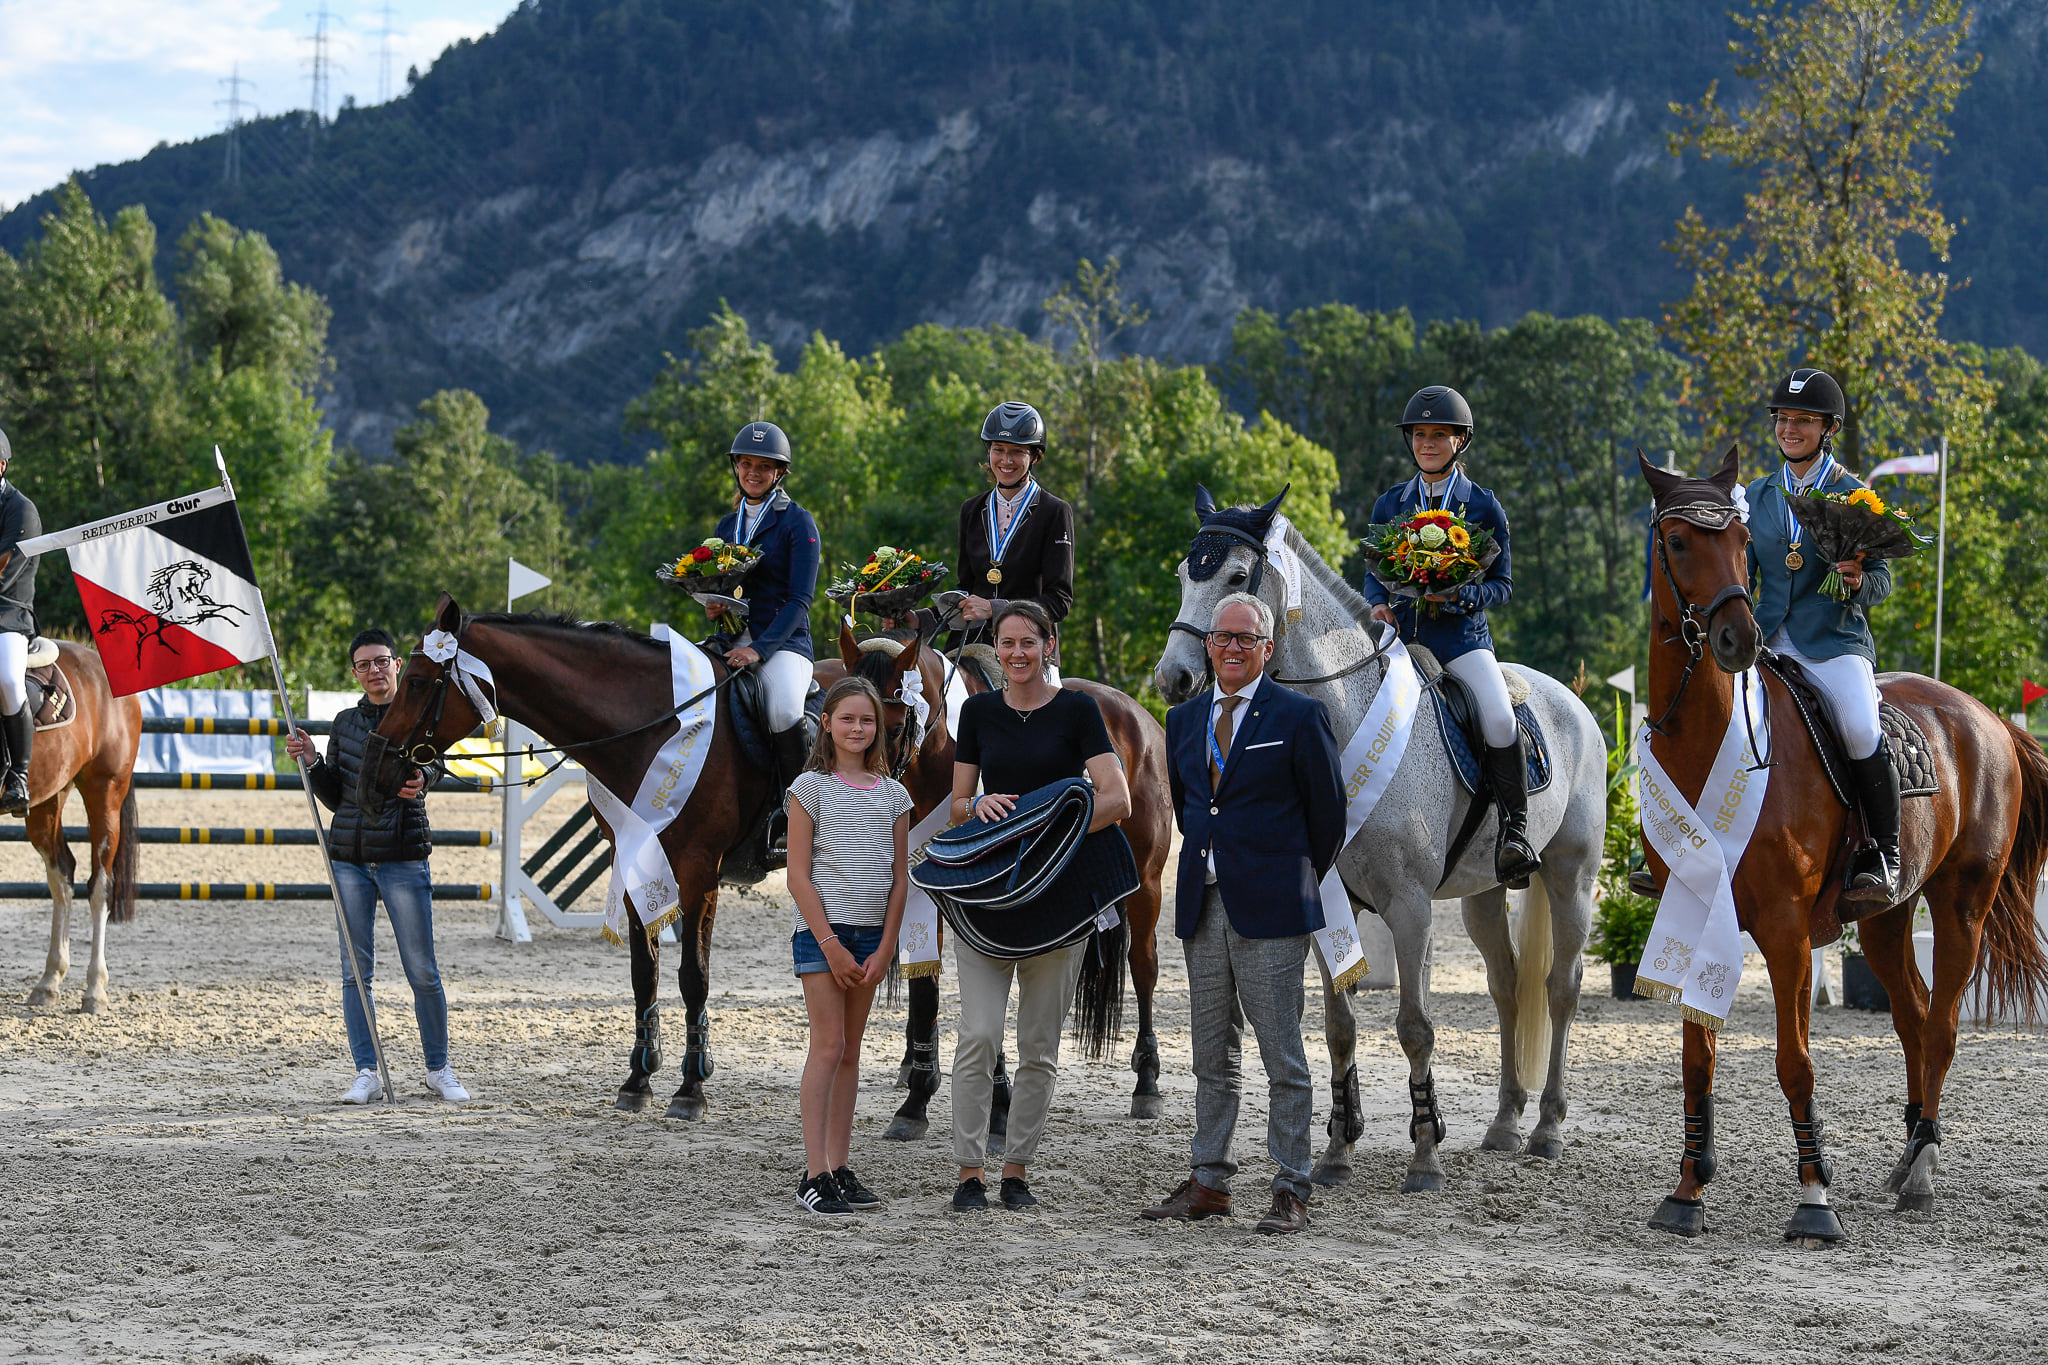 Siegerinnen eines Events auf ihren Pferden mit Blumenstrauss und Medaille, drei Personen stehen im Vordergrund davor